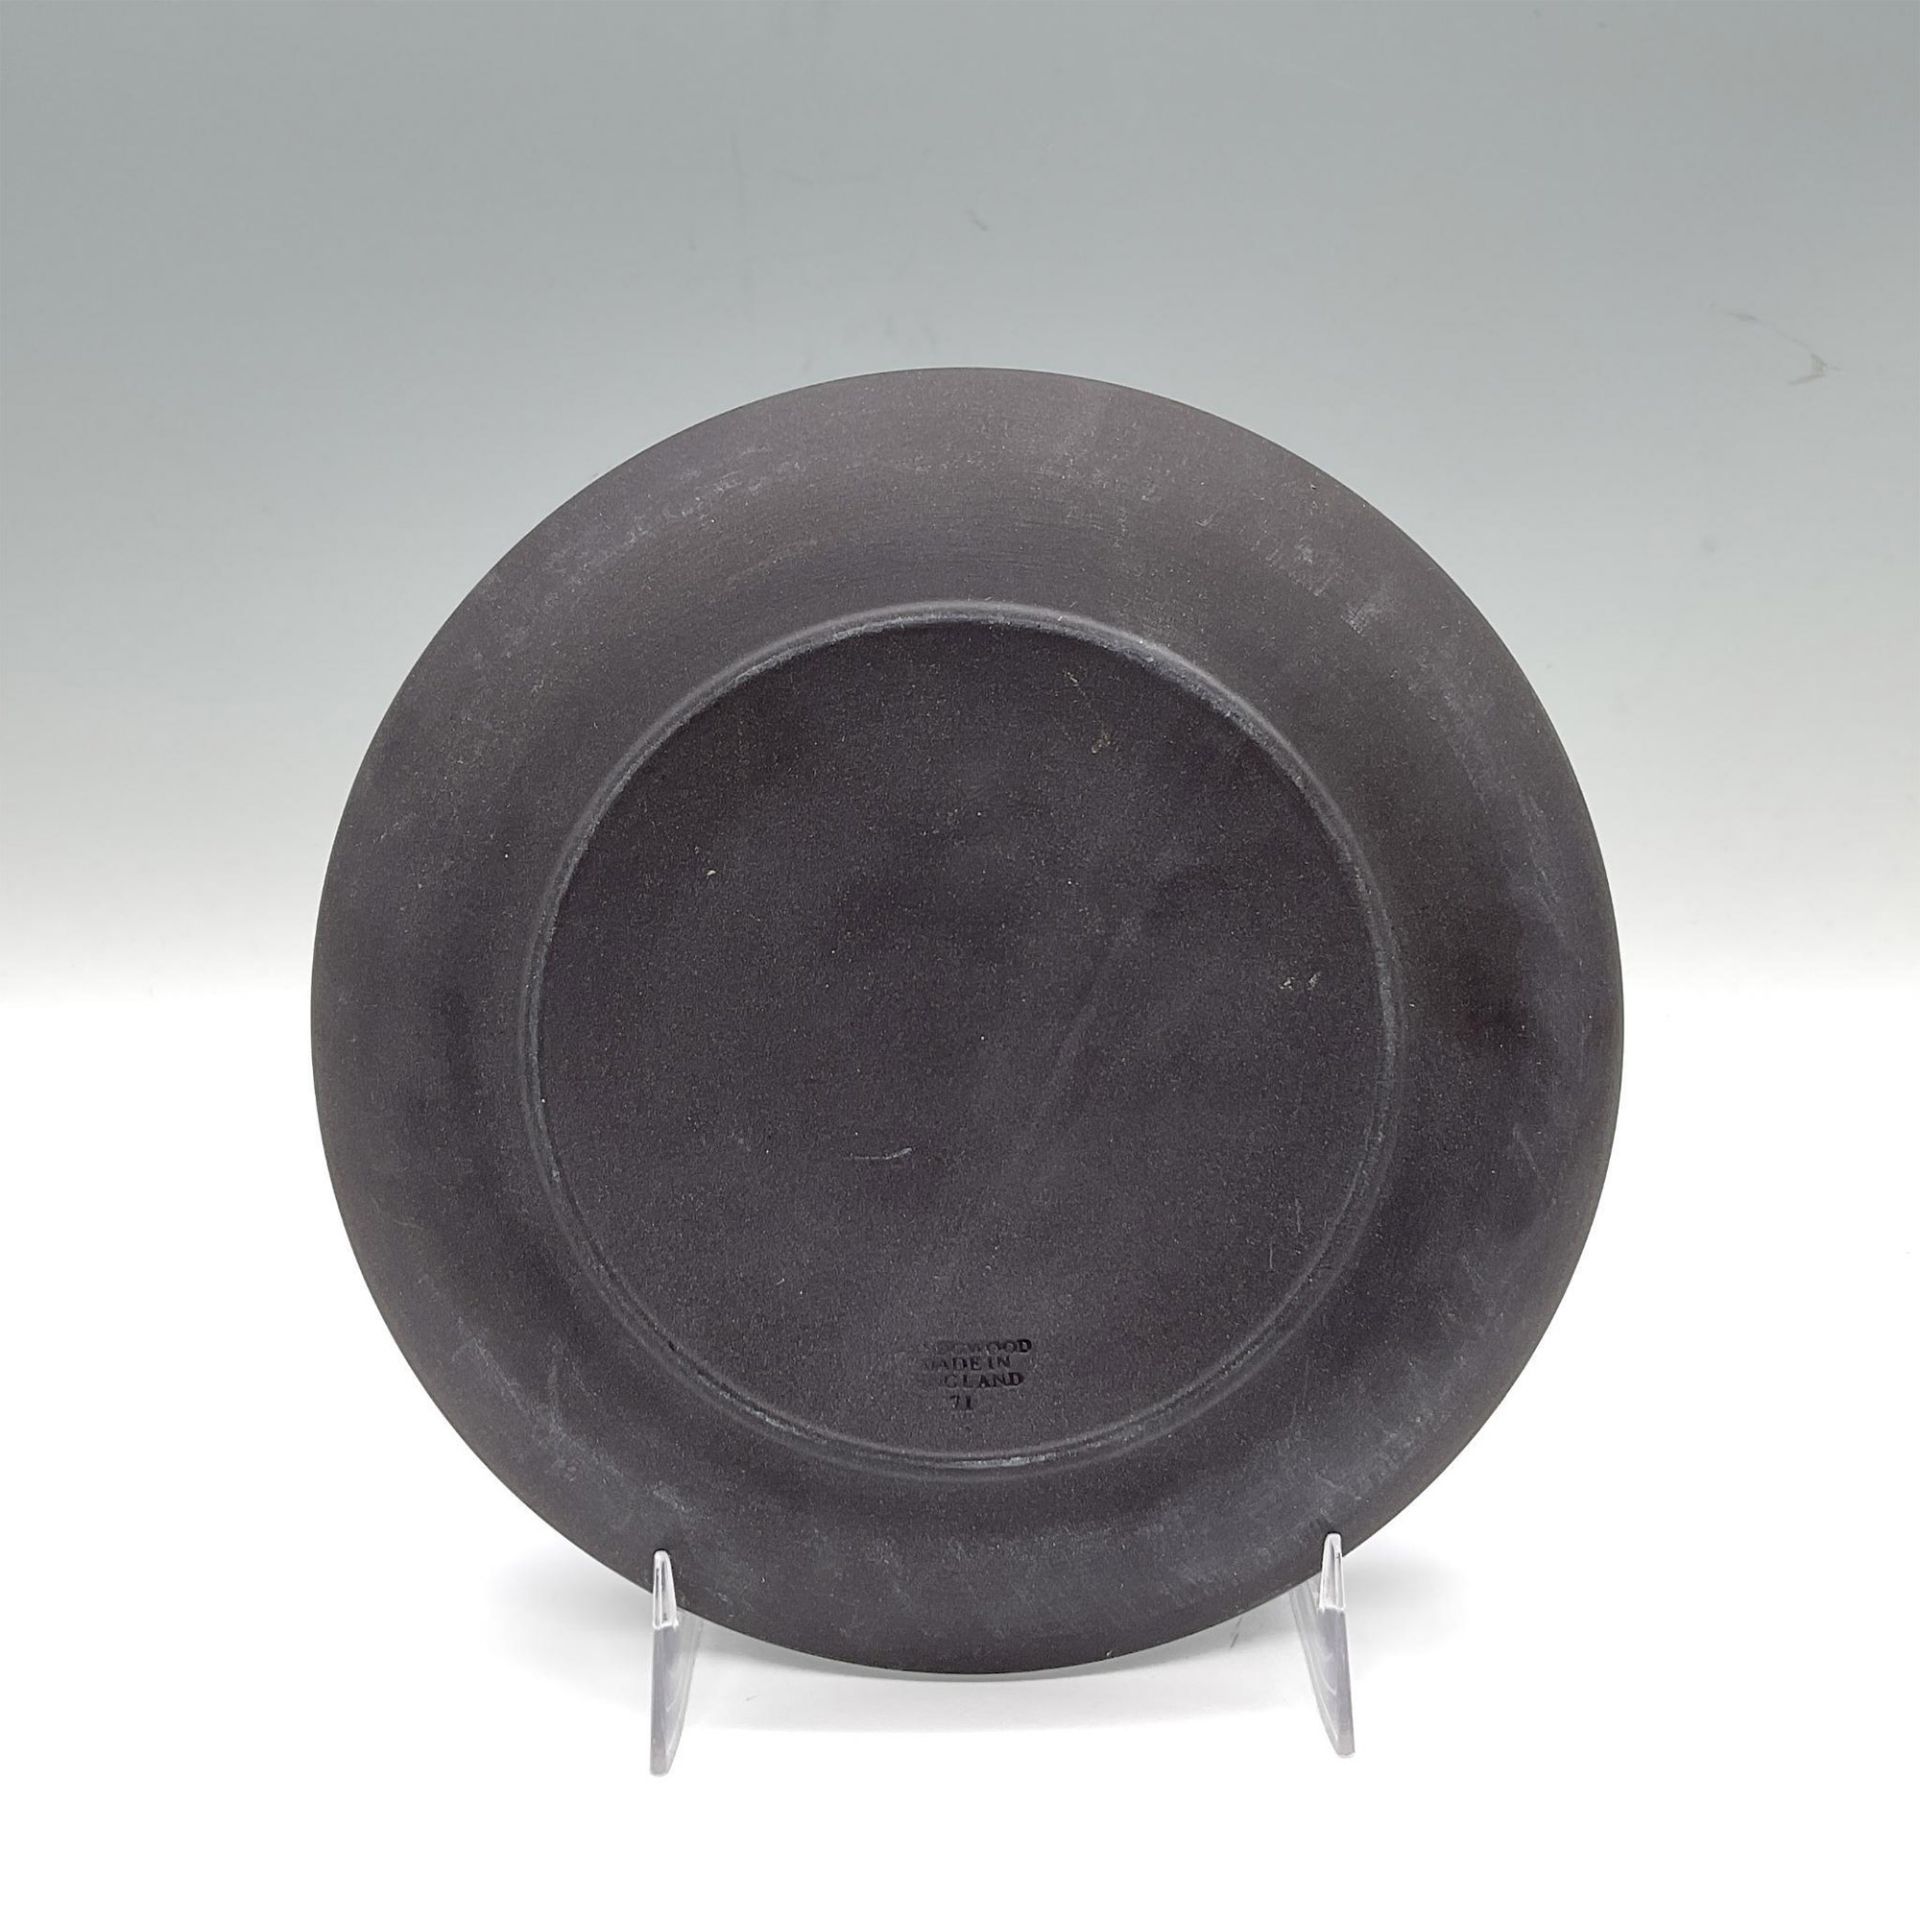 Wedgwood Black Basalt Plate, Mother - Image 3 of 3